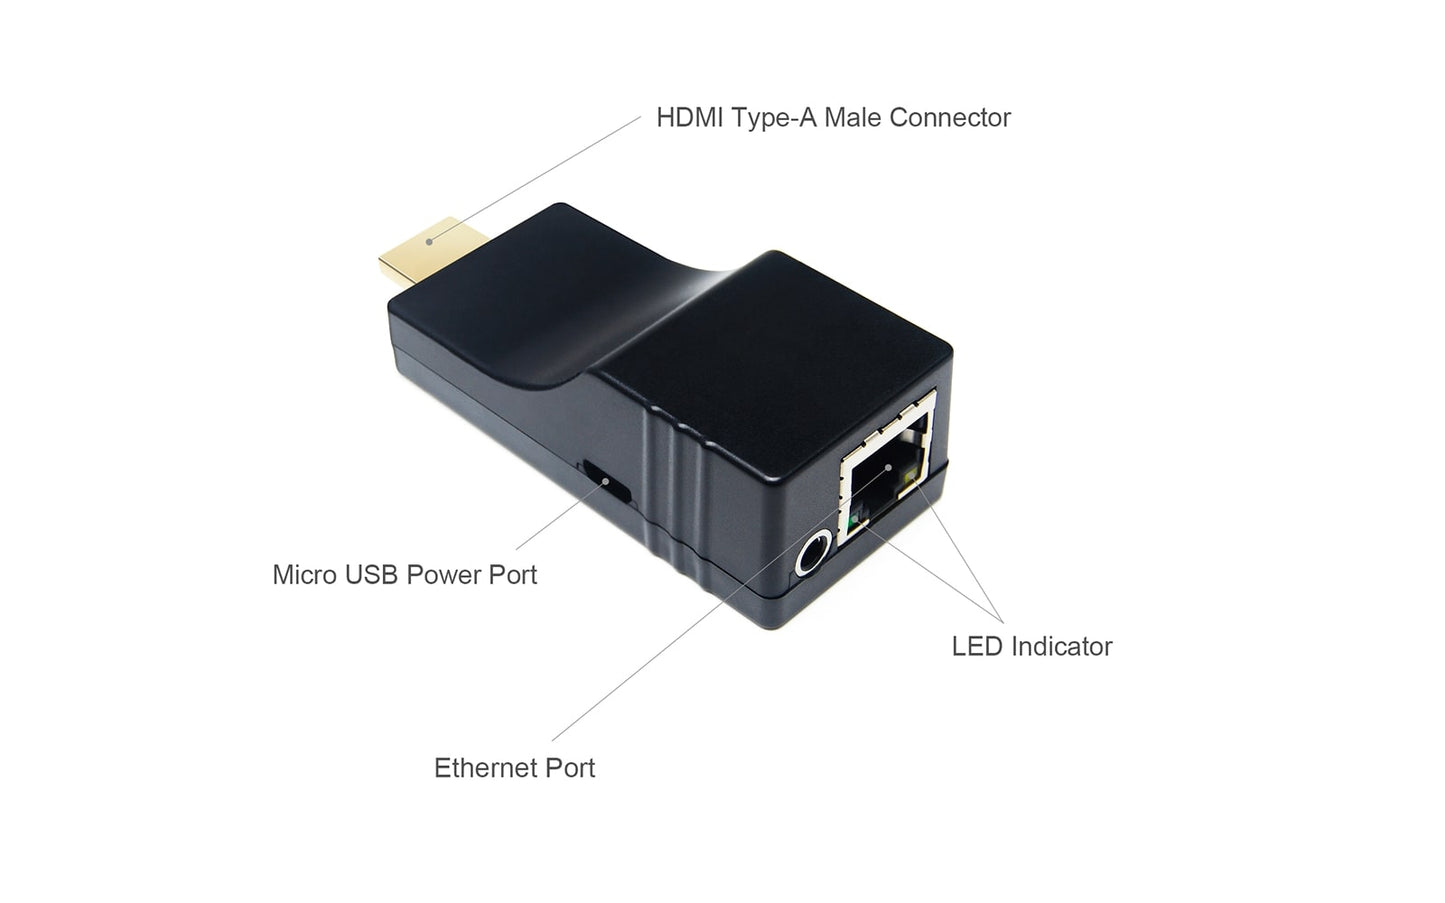  HE-35 4K HDMI over Ethernet transmission